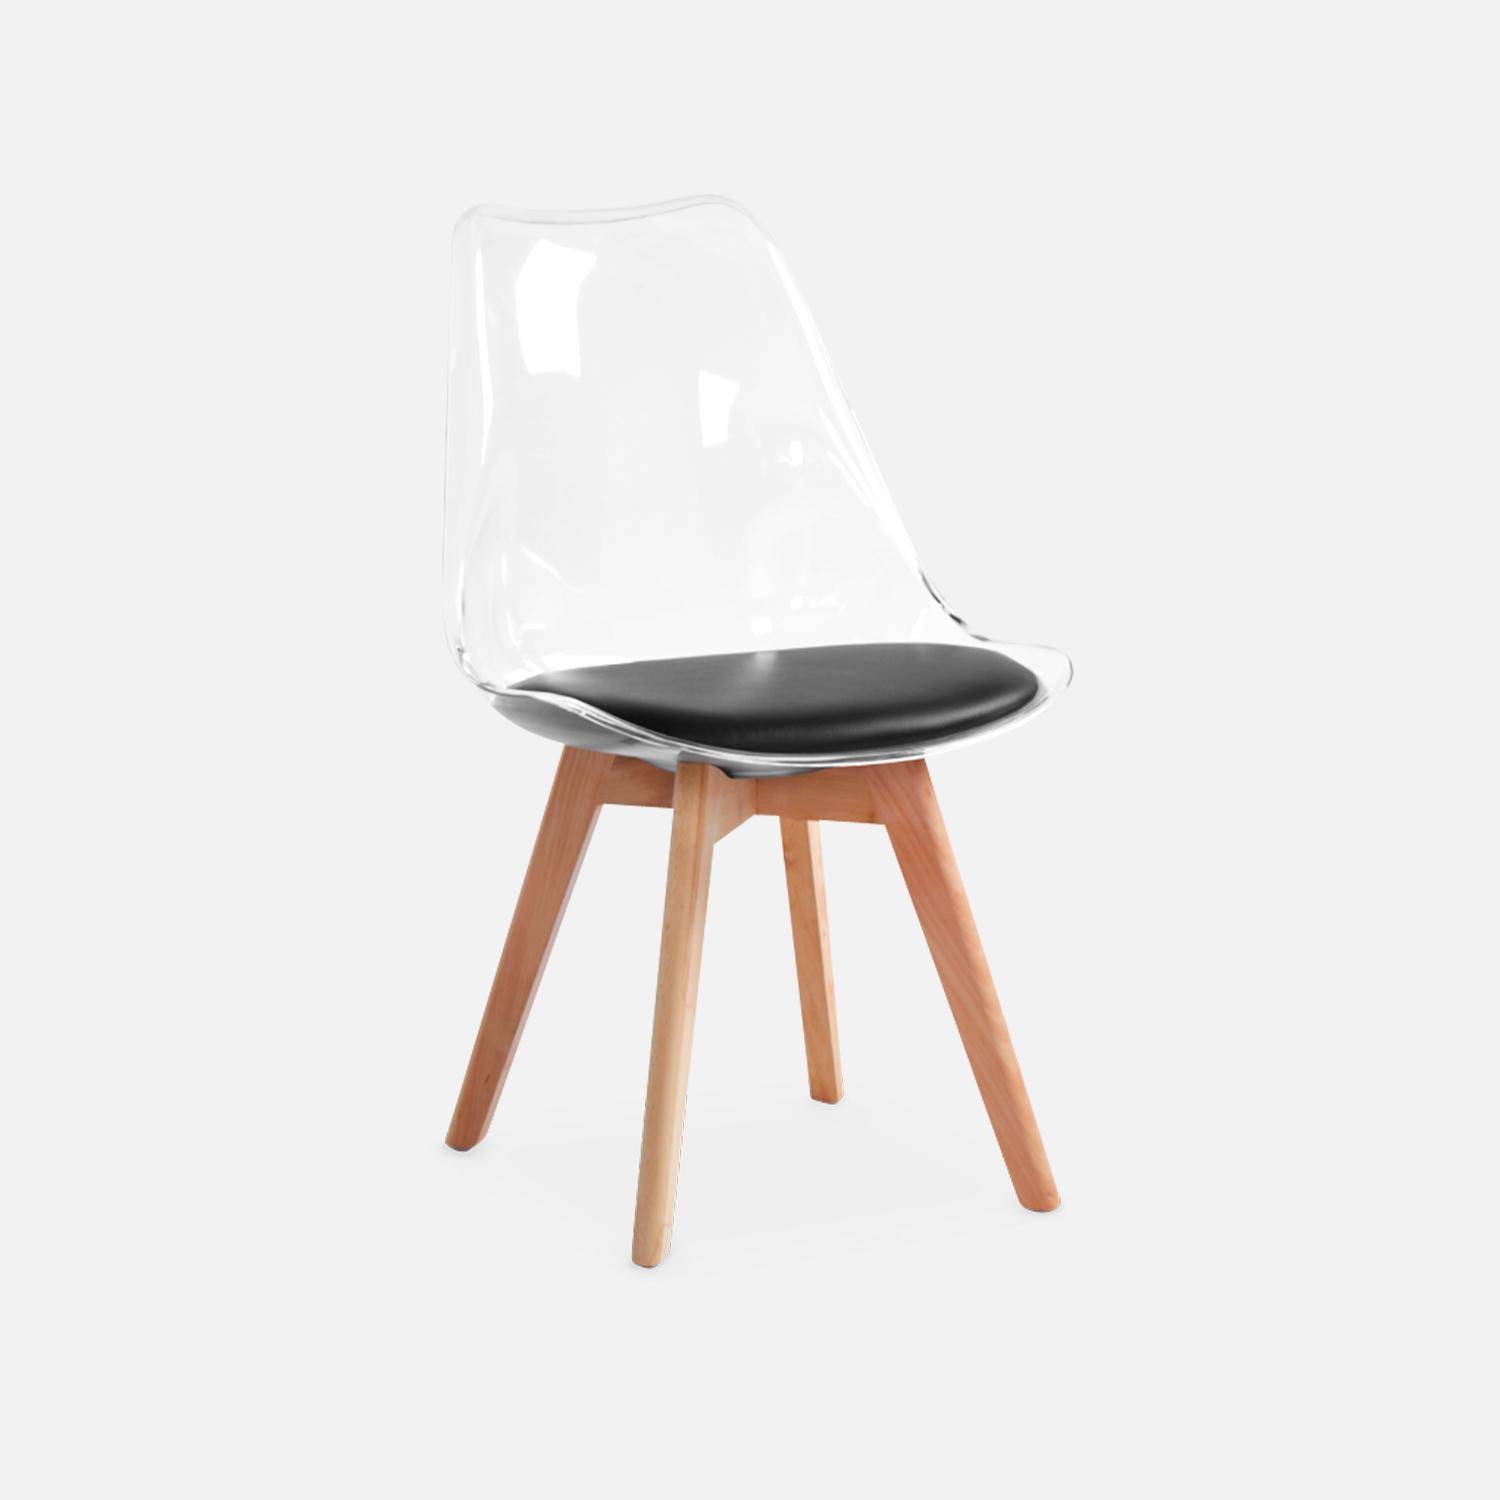 Juego de 4 sillas escandinavas - Lagertha - patas de madera, asientos individuales, cojín negro, carcasa transparente  Photo6